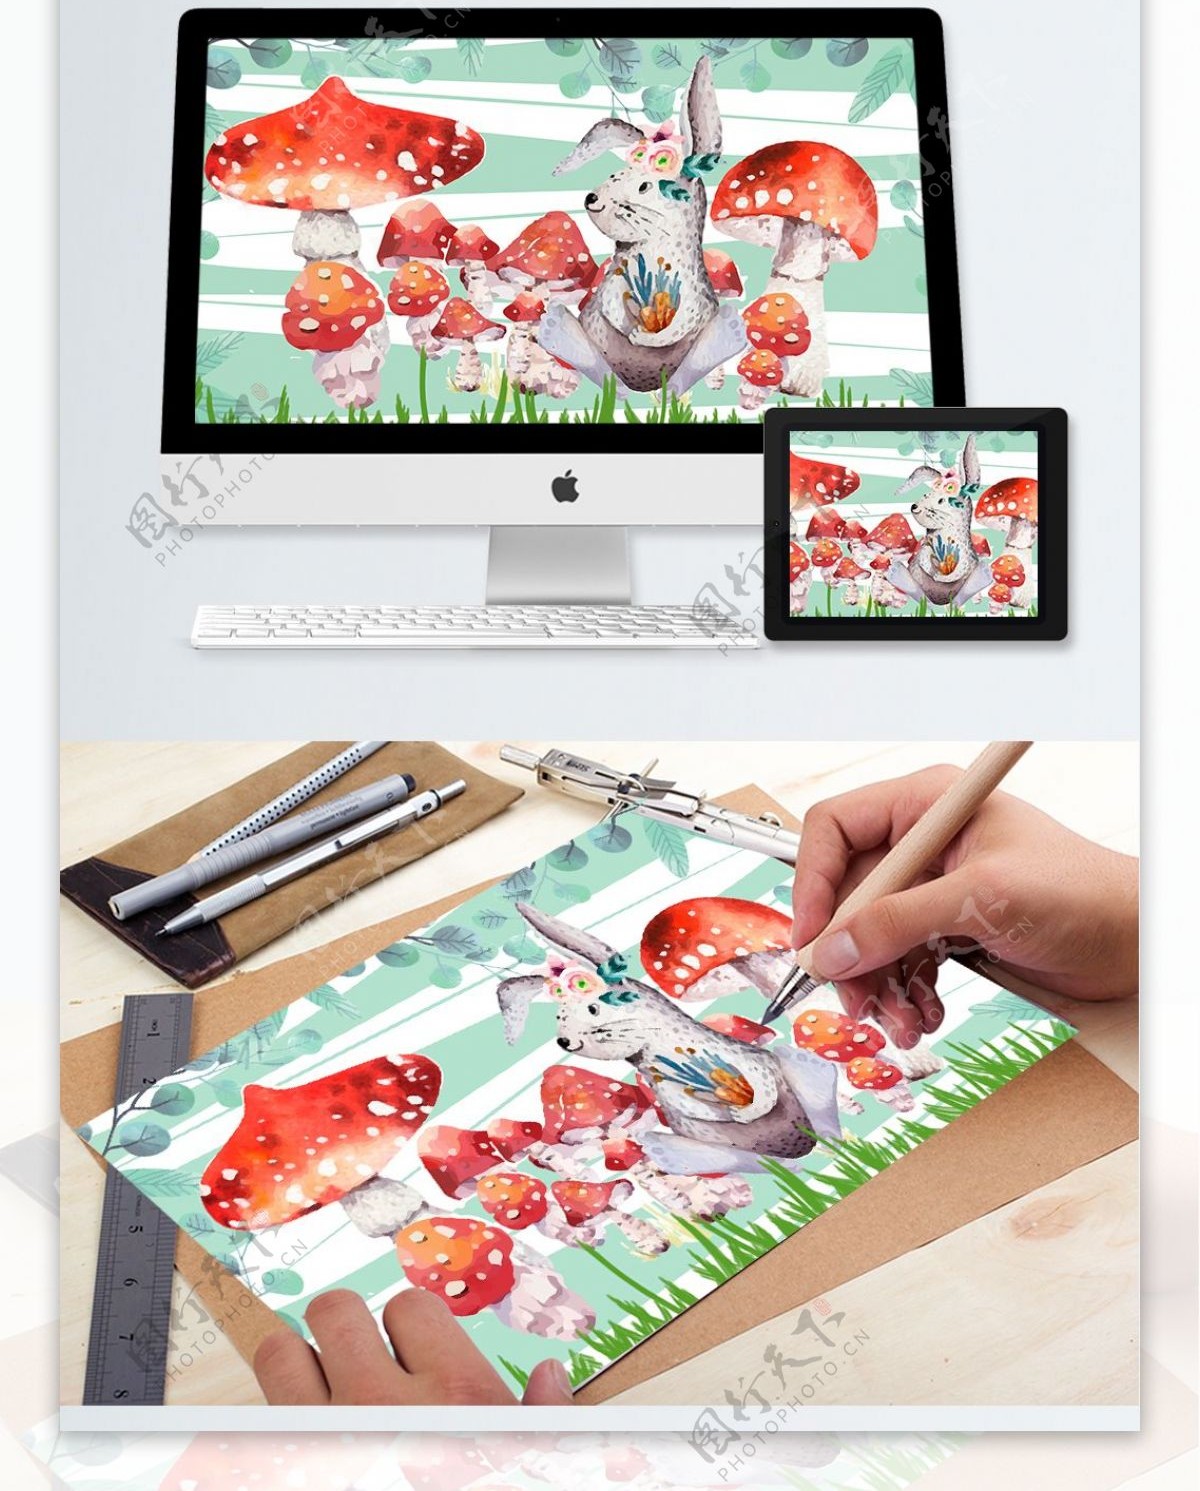 原创蘑菇儿童画本插画森林可爱的小动物兔子